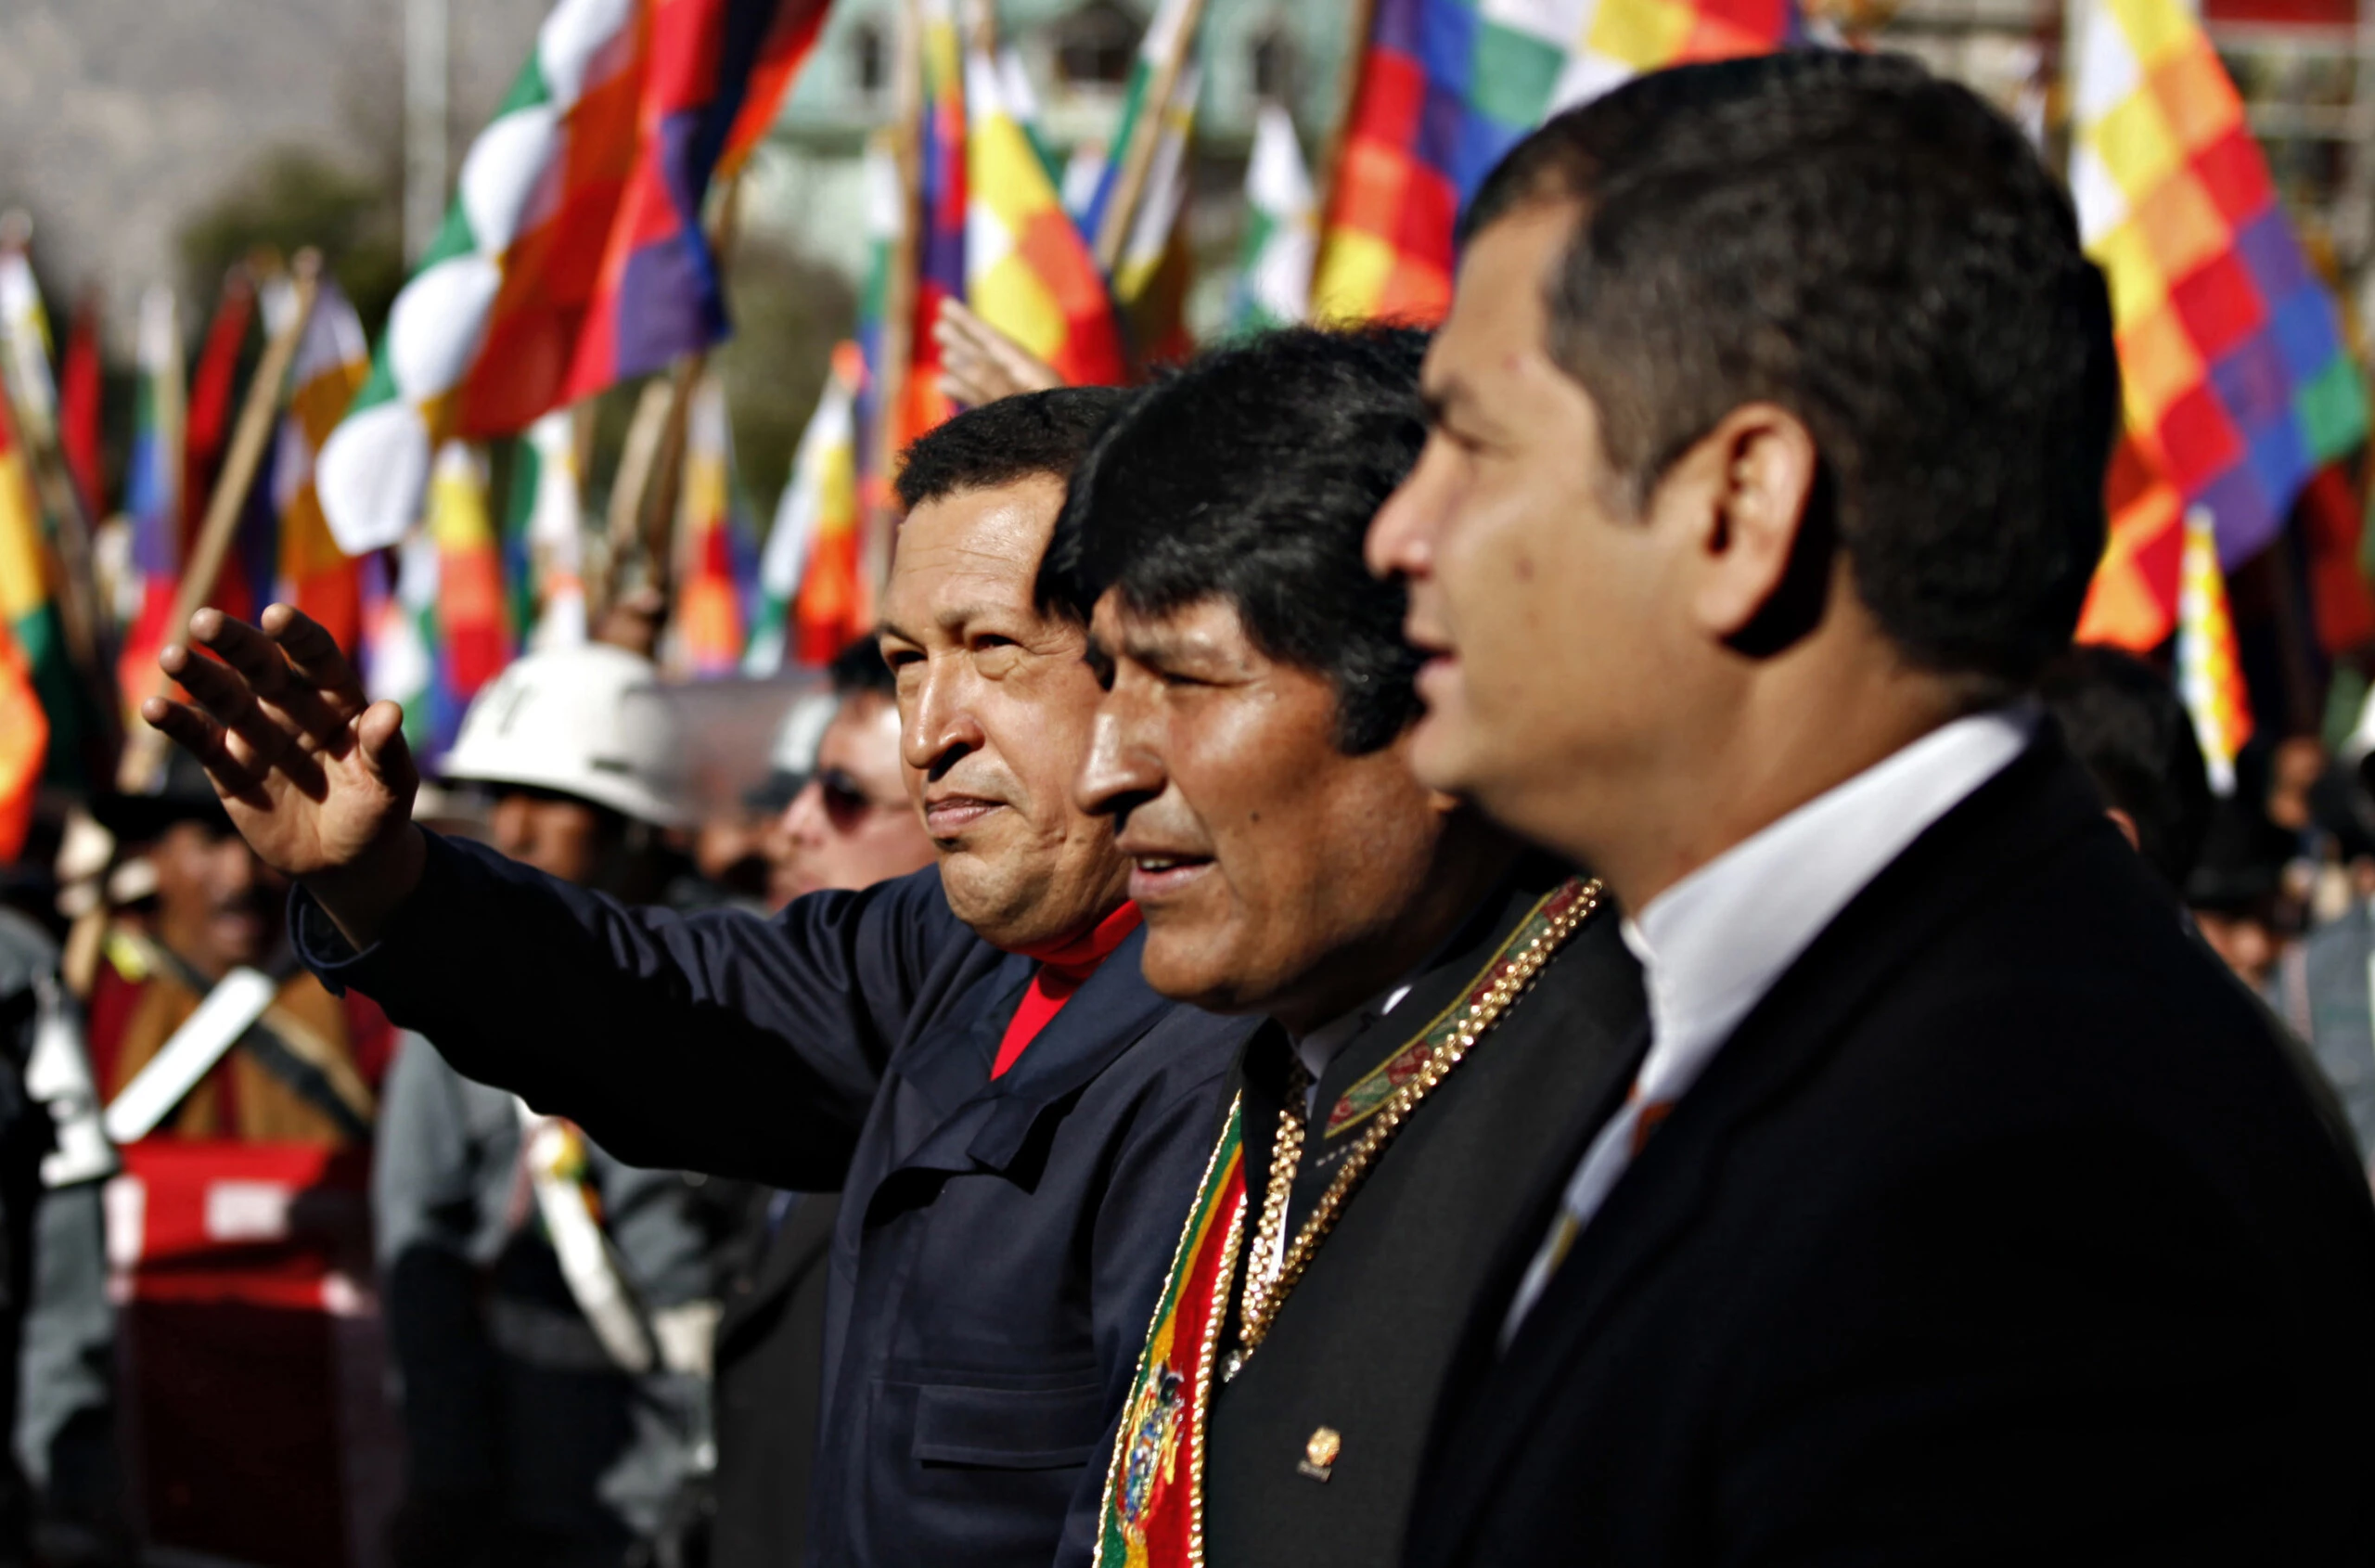 Da esquerda para a direita: o presidente da Venezuela, Hugo Chávez, o presidente da Bolívia, Evo Morales, e o presidente do Equador, Rafael Correa, chegam a um desfile militar em comemoração aos 200 anos do início do movimento de independência da Bolívia em La Paz, em 16 de julho de 2009.